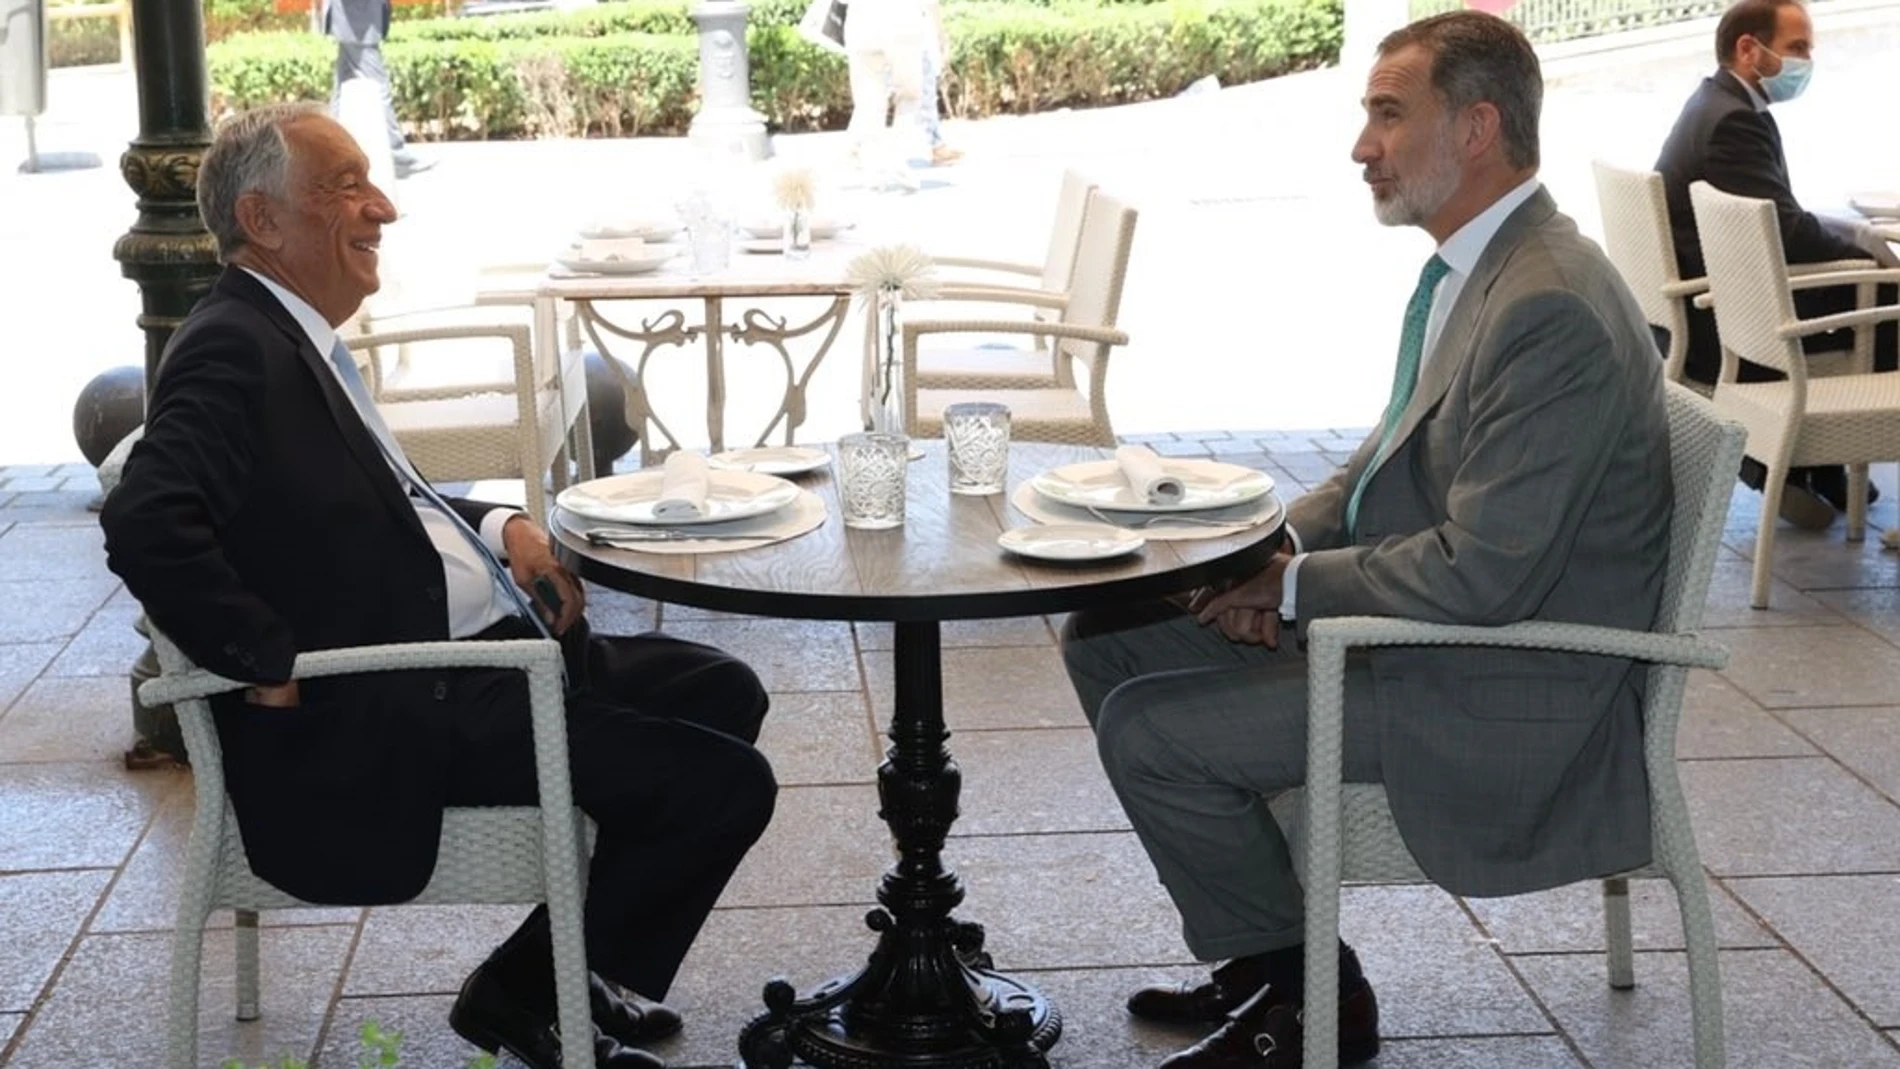 El Rey Felipe VI y el presidente de la República de Portugal, Marcelo Rebelo de Sousa, almuerzan en una terraza de la Plaza de Oriente de Madrid